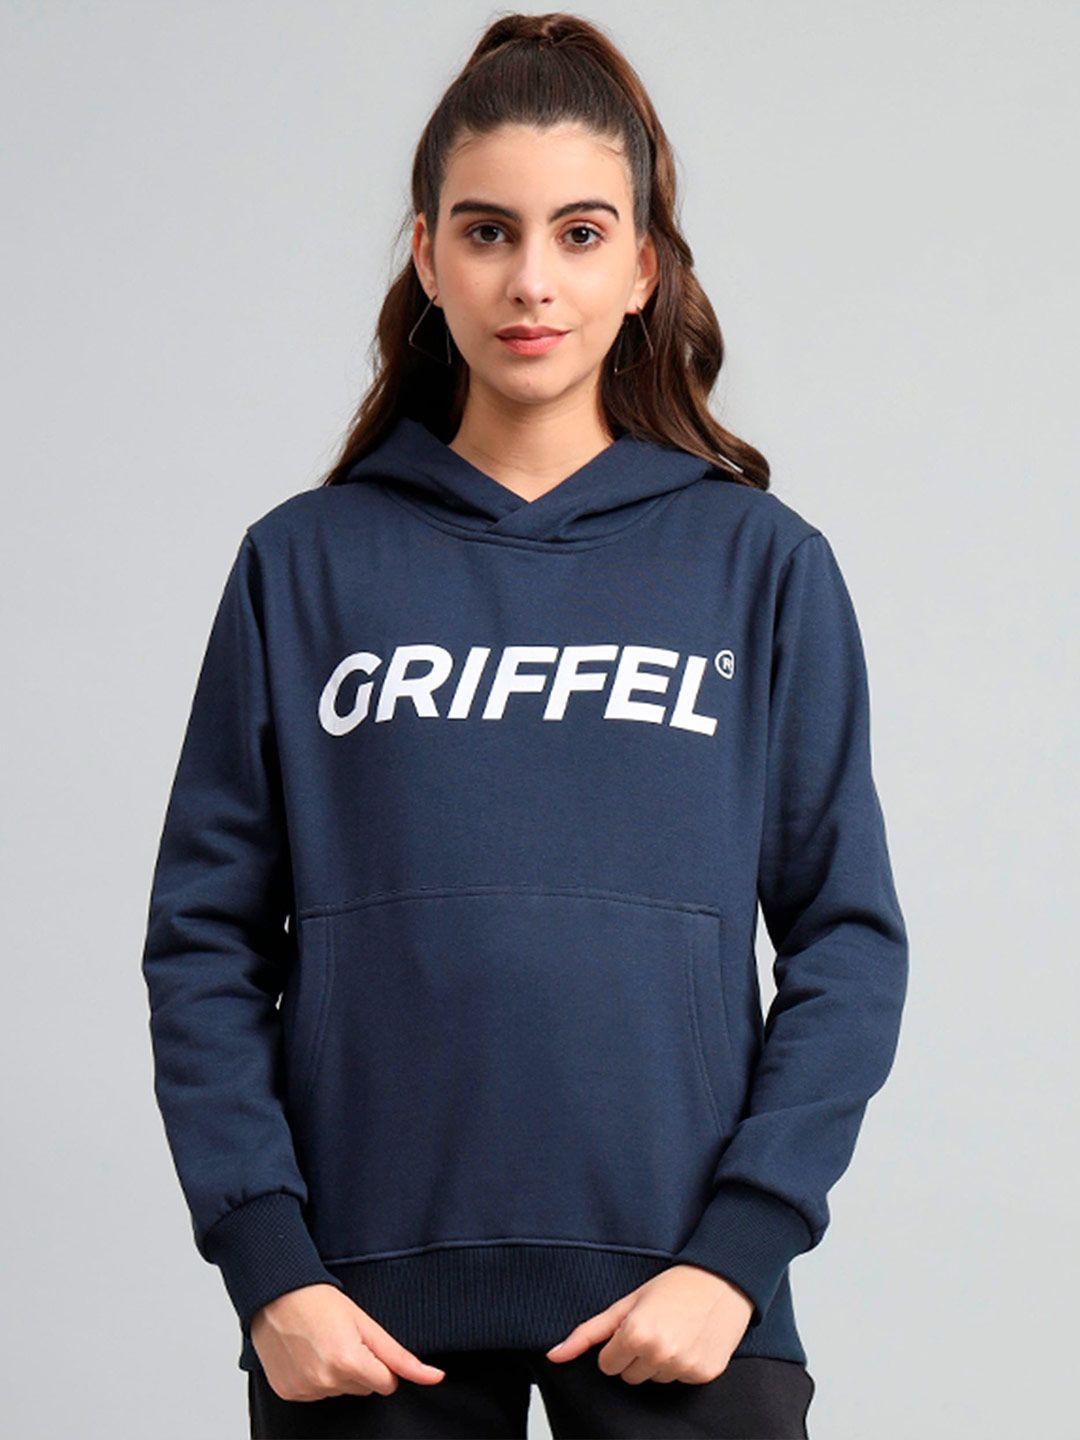 griffel-typography-printed-long-sleeves-hooded-pullover-sweatshirt